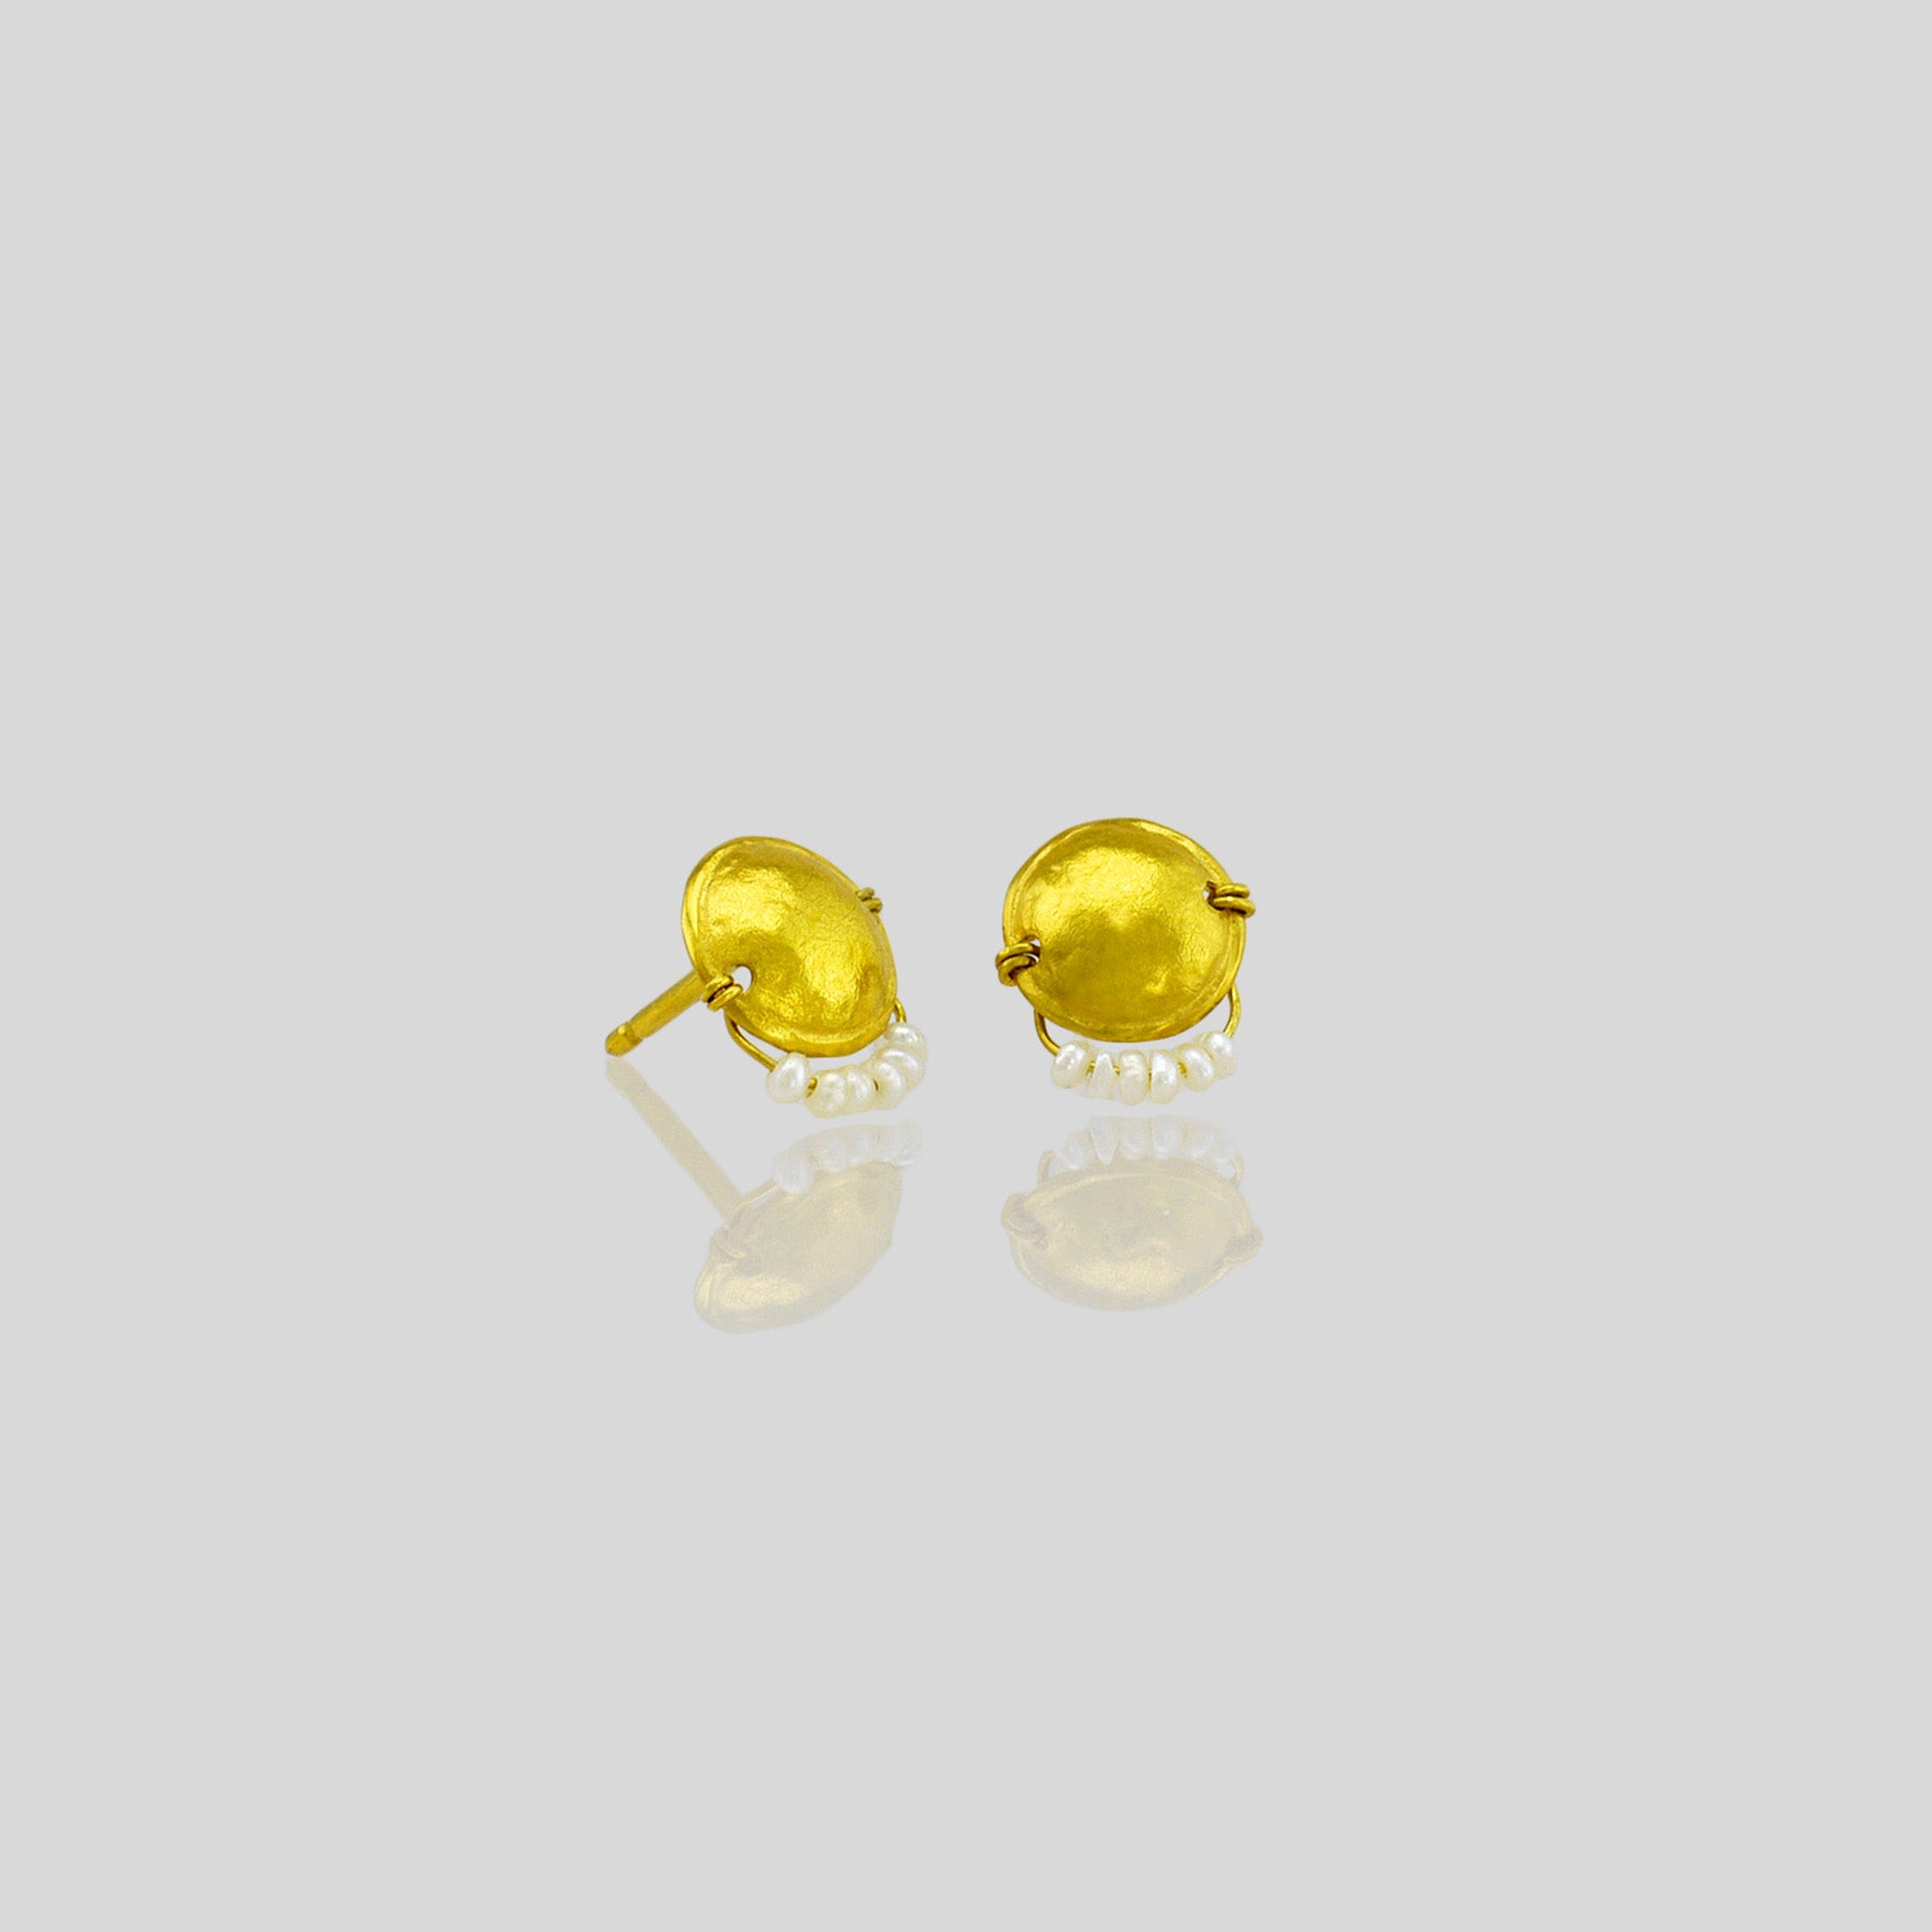 כיפה זעירה - עגילי זהב צמודים עם פנינים זעירות